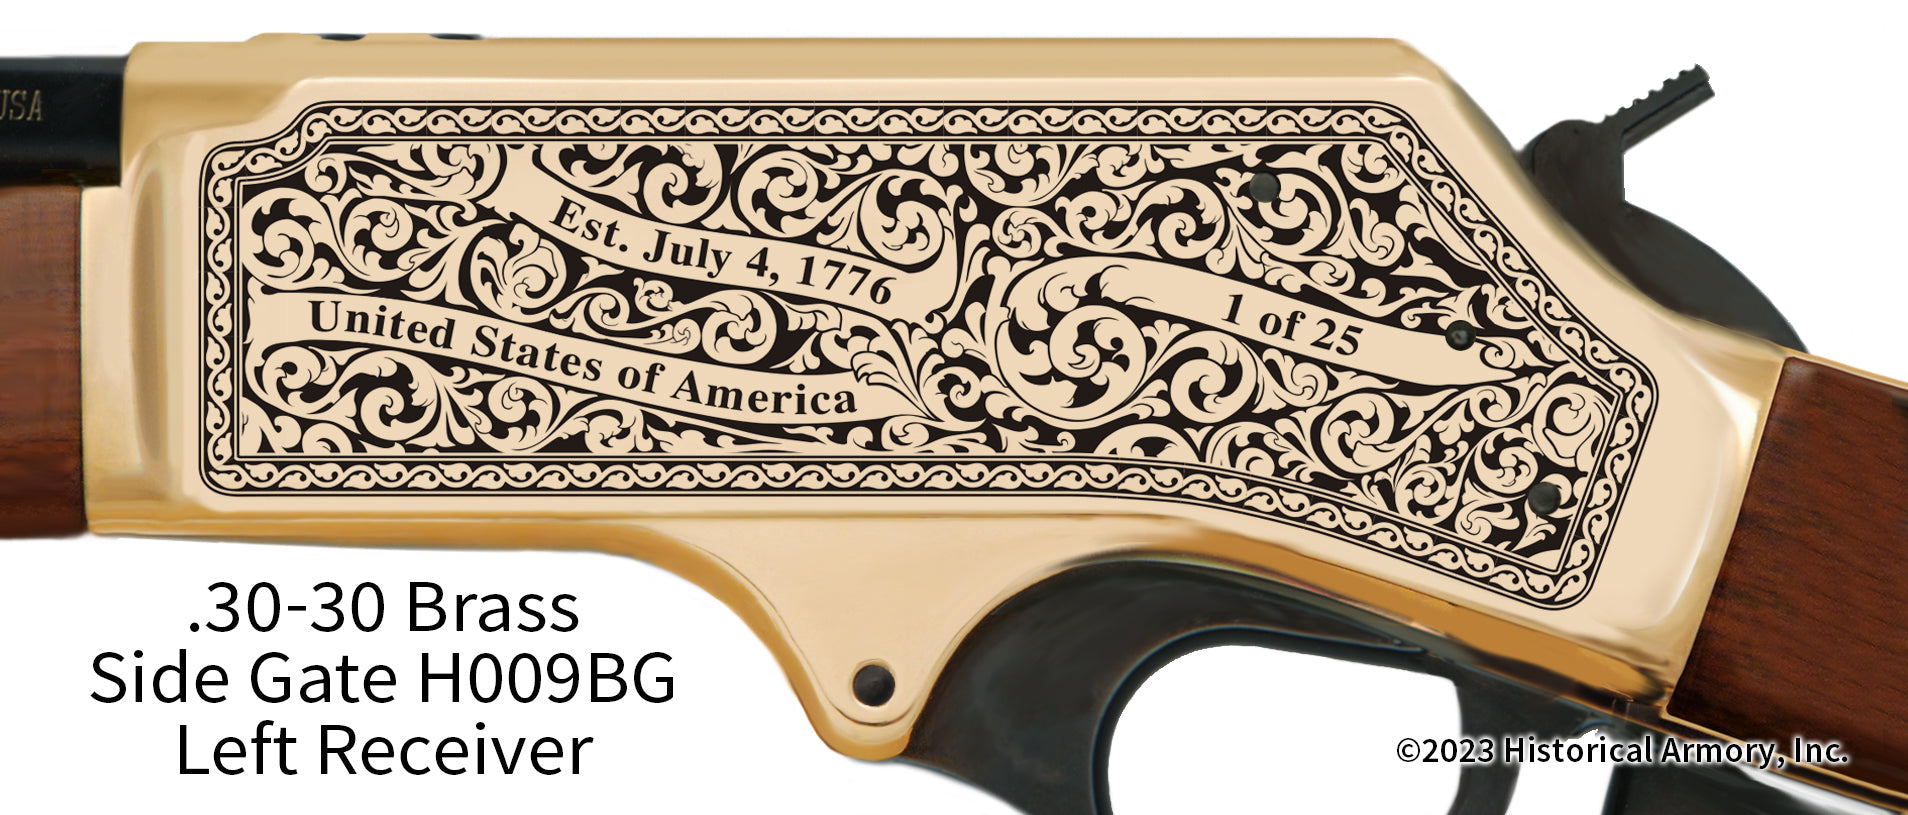 Chippewa County Michigan Engraved Henry .30-30 Brass Side Gate Rifle